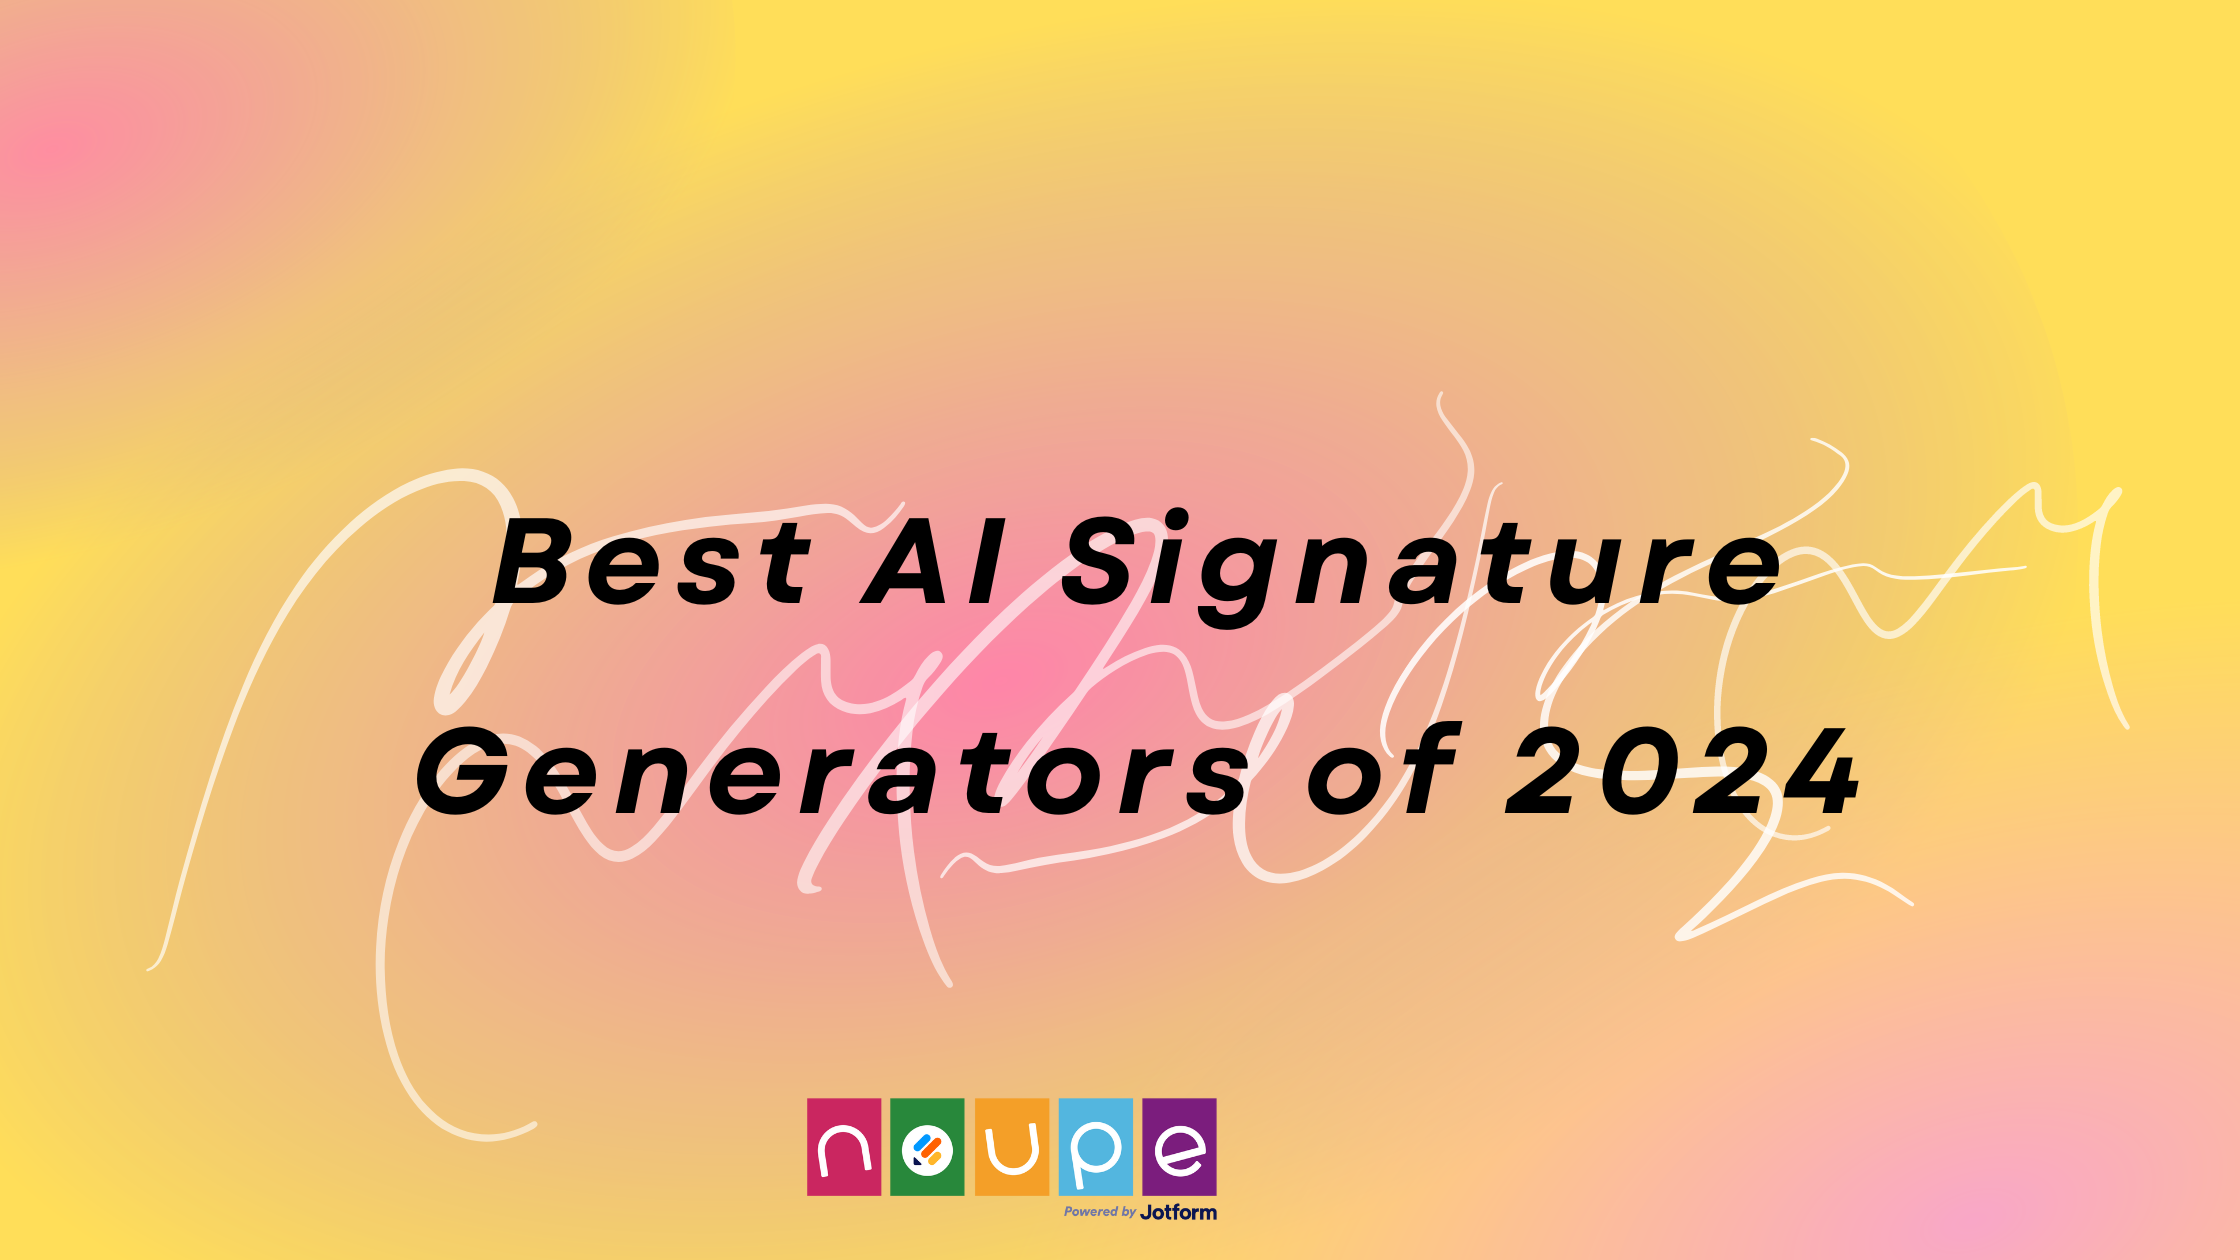 #Best AI Signature Generators of 2024 